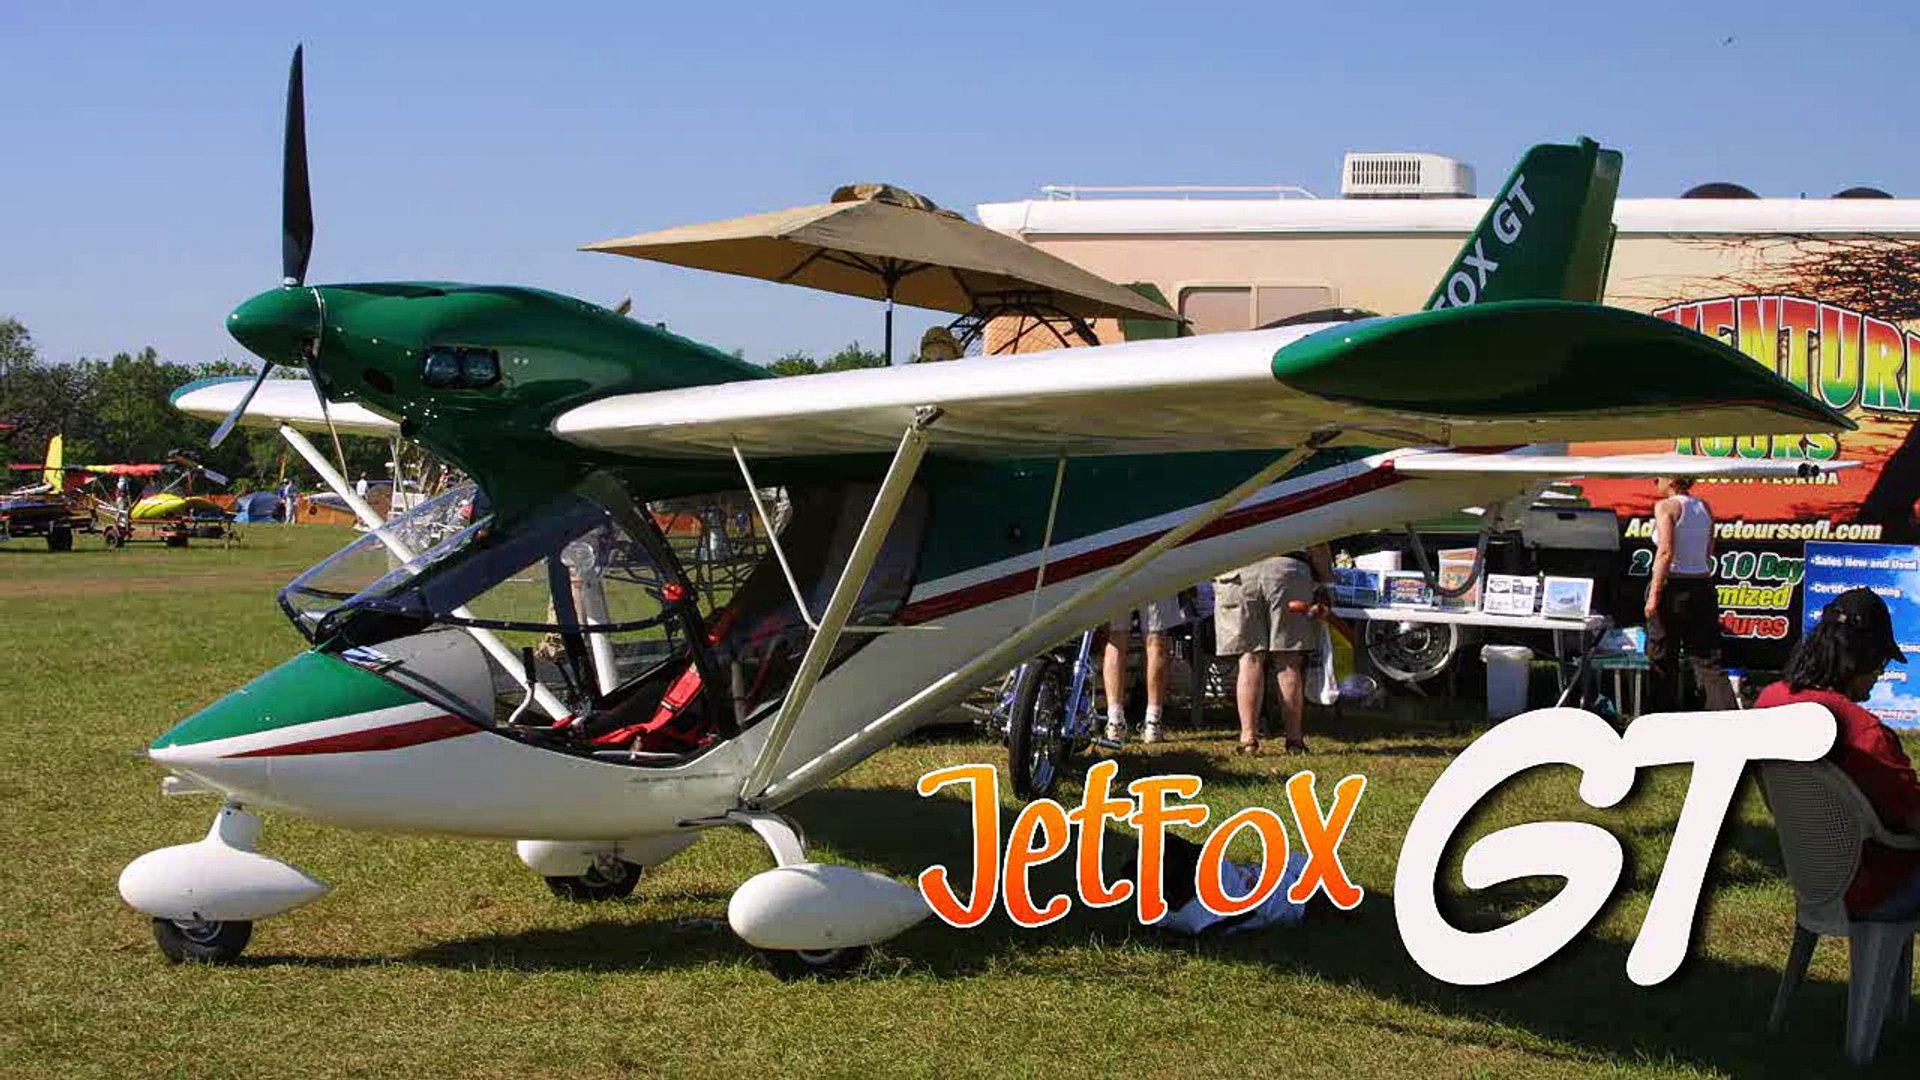 Jet Fox 91, Jet Fox 97, Jet Fox GT, Jet Fox Amphib experimental light sport aircraft.